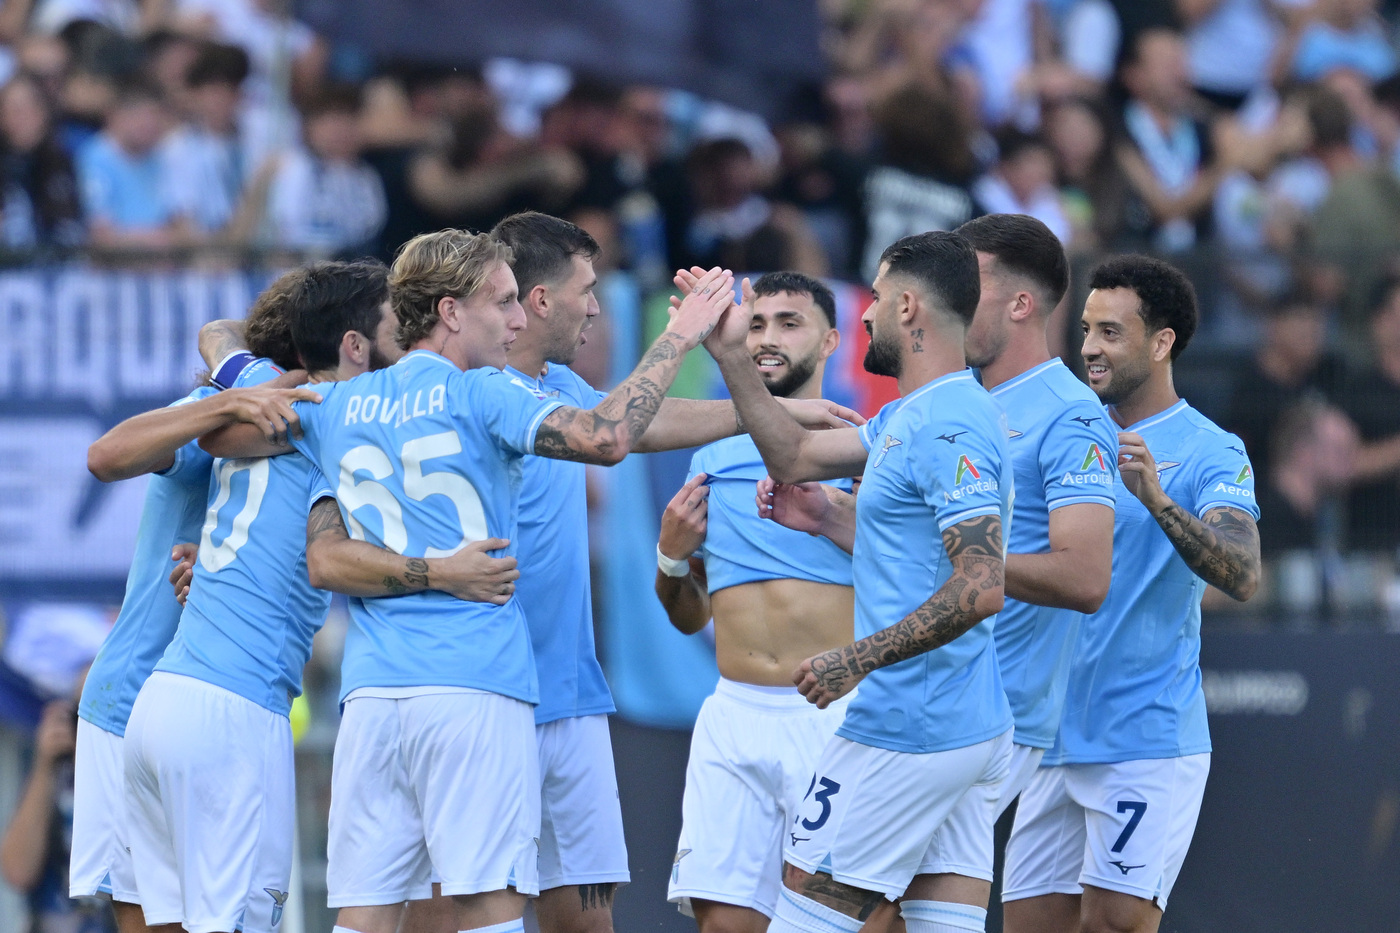 Giocatori della Lazio festeggiano un gol